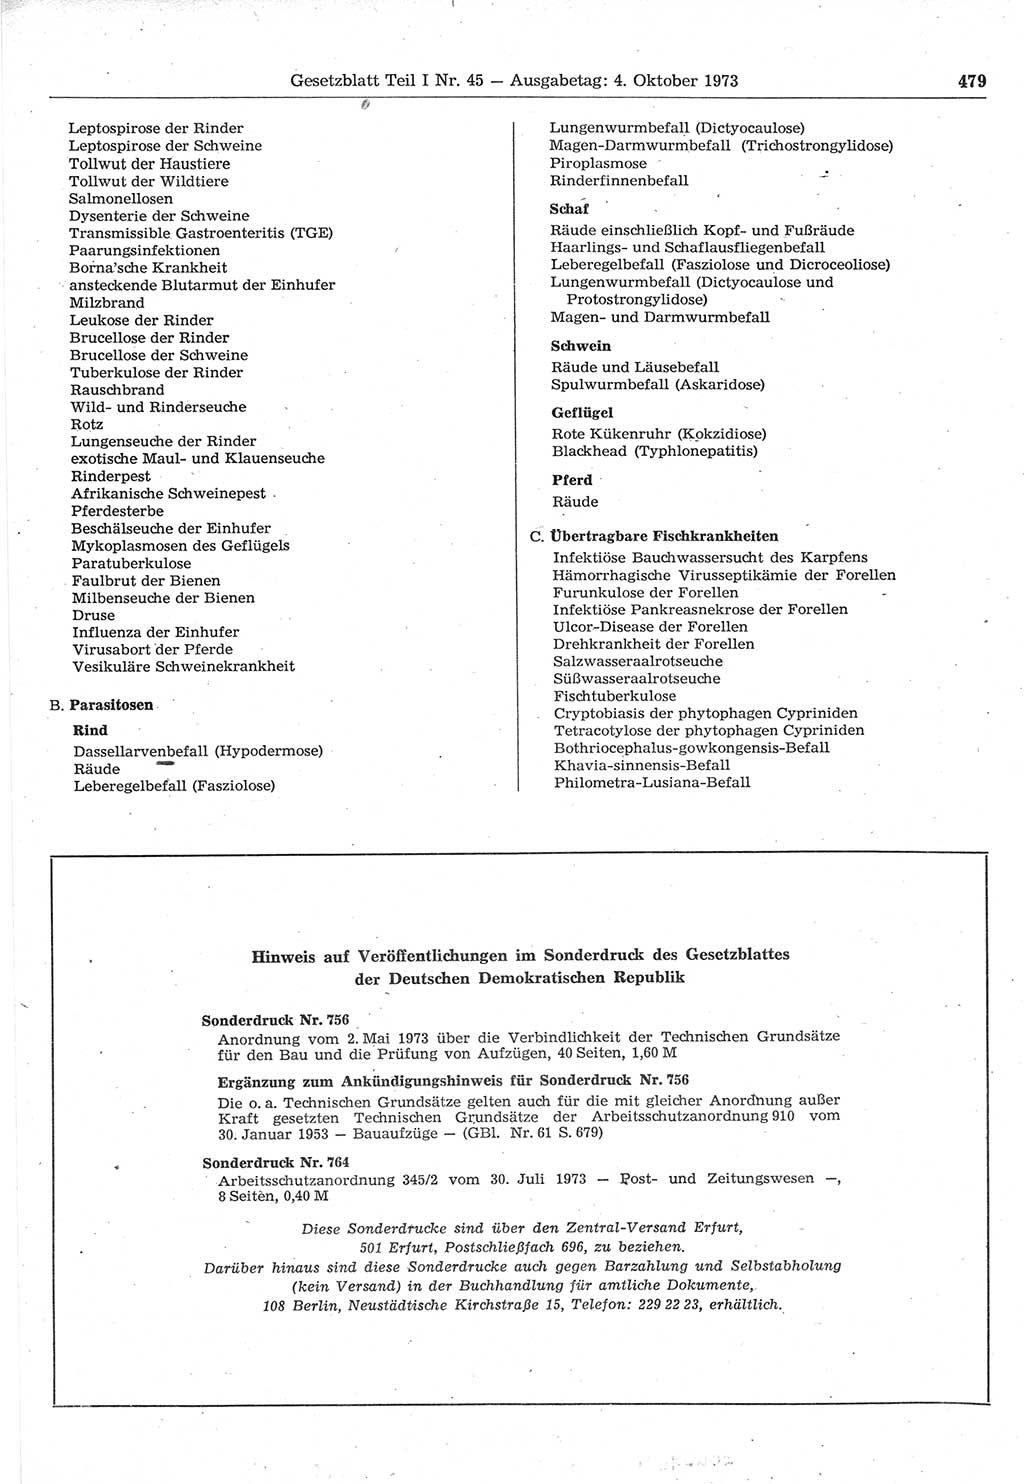 Gesetzblatt (GBl.) der Deutschen Demokratischen Republik (DDR) Teil Ⅰ 1973, Seite 479 (GBl. DDR Ⅰ 1973, S. 479)